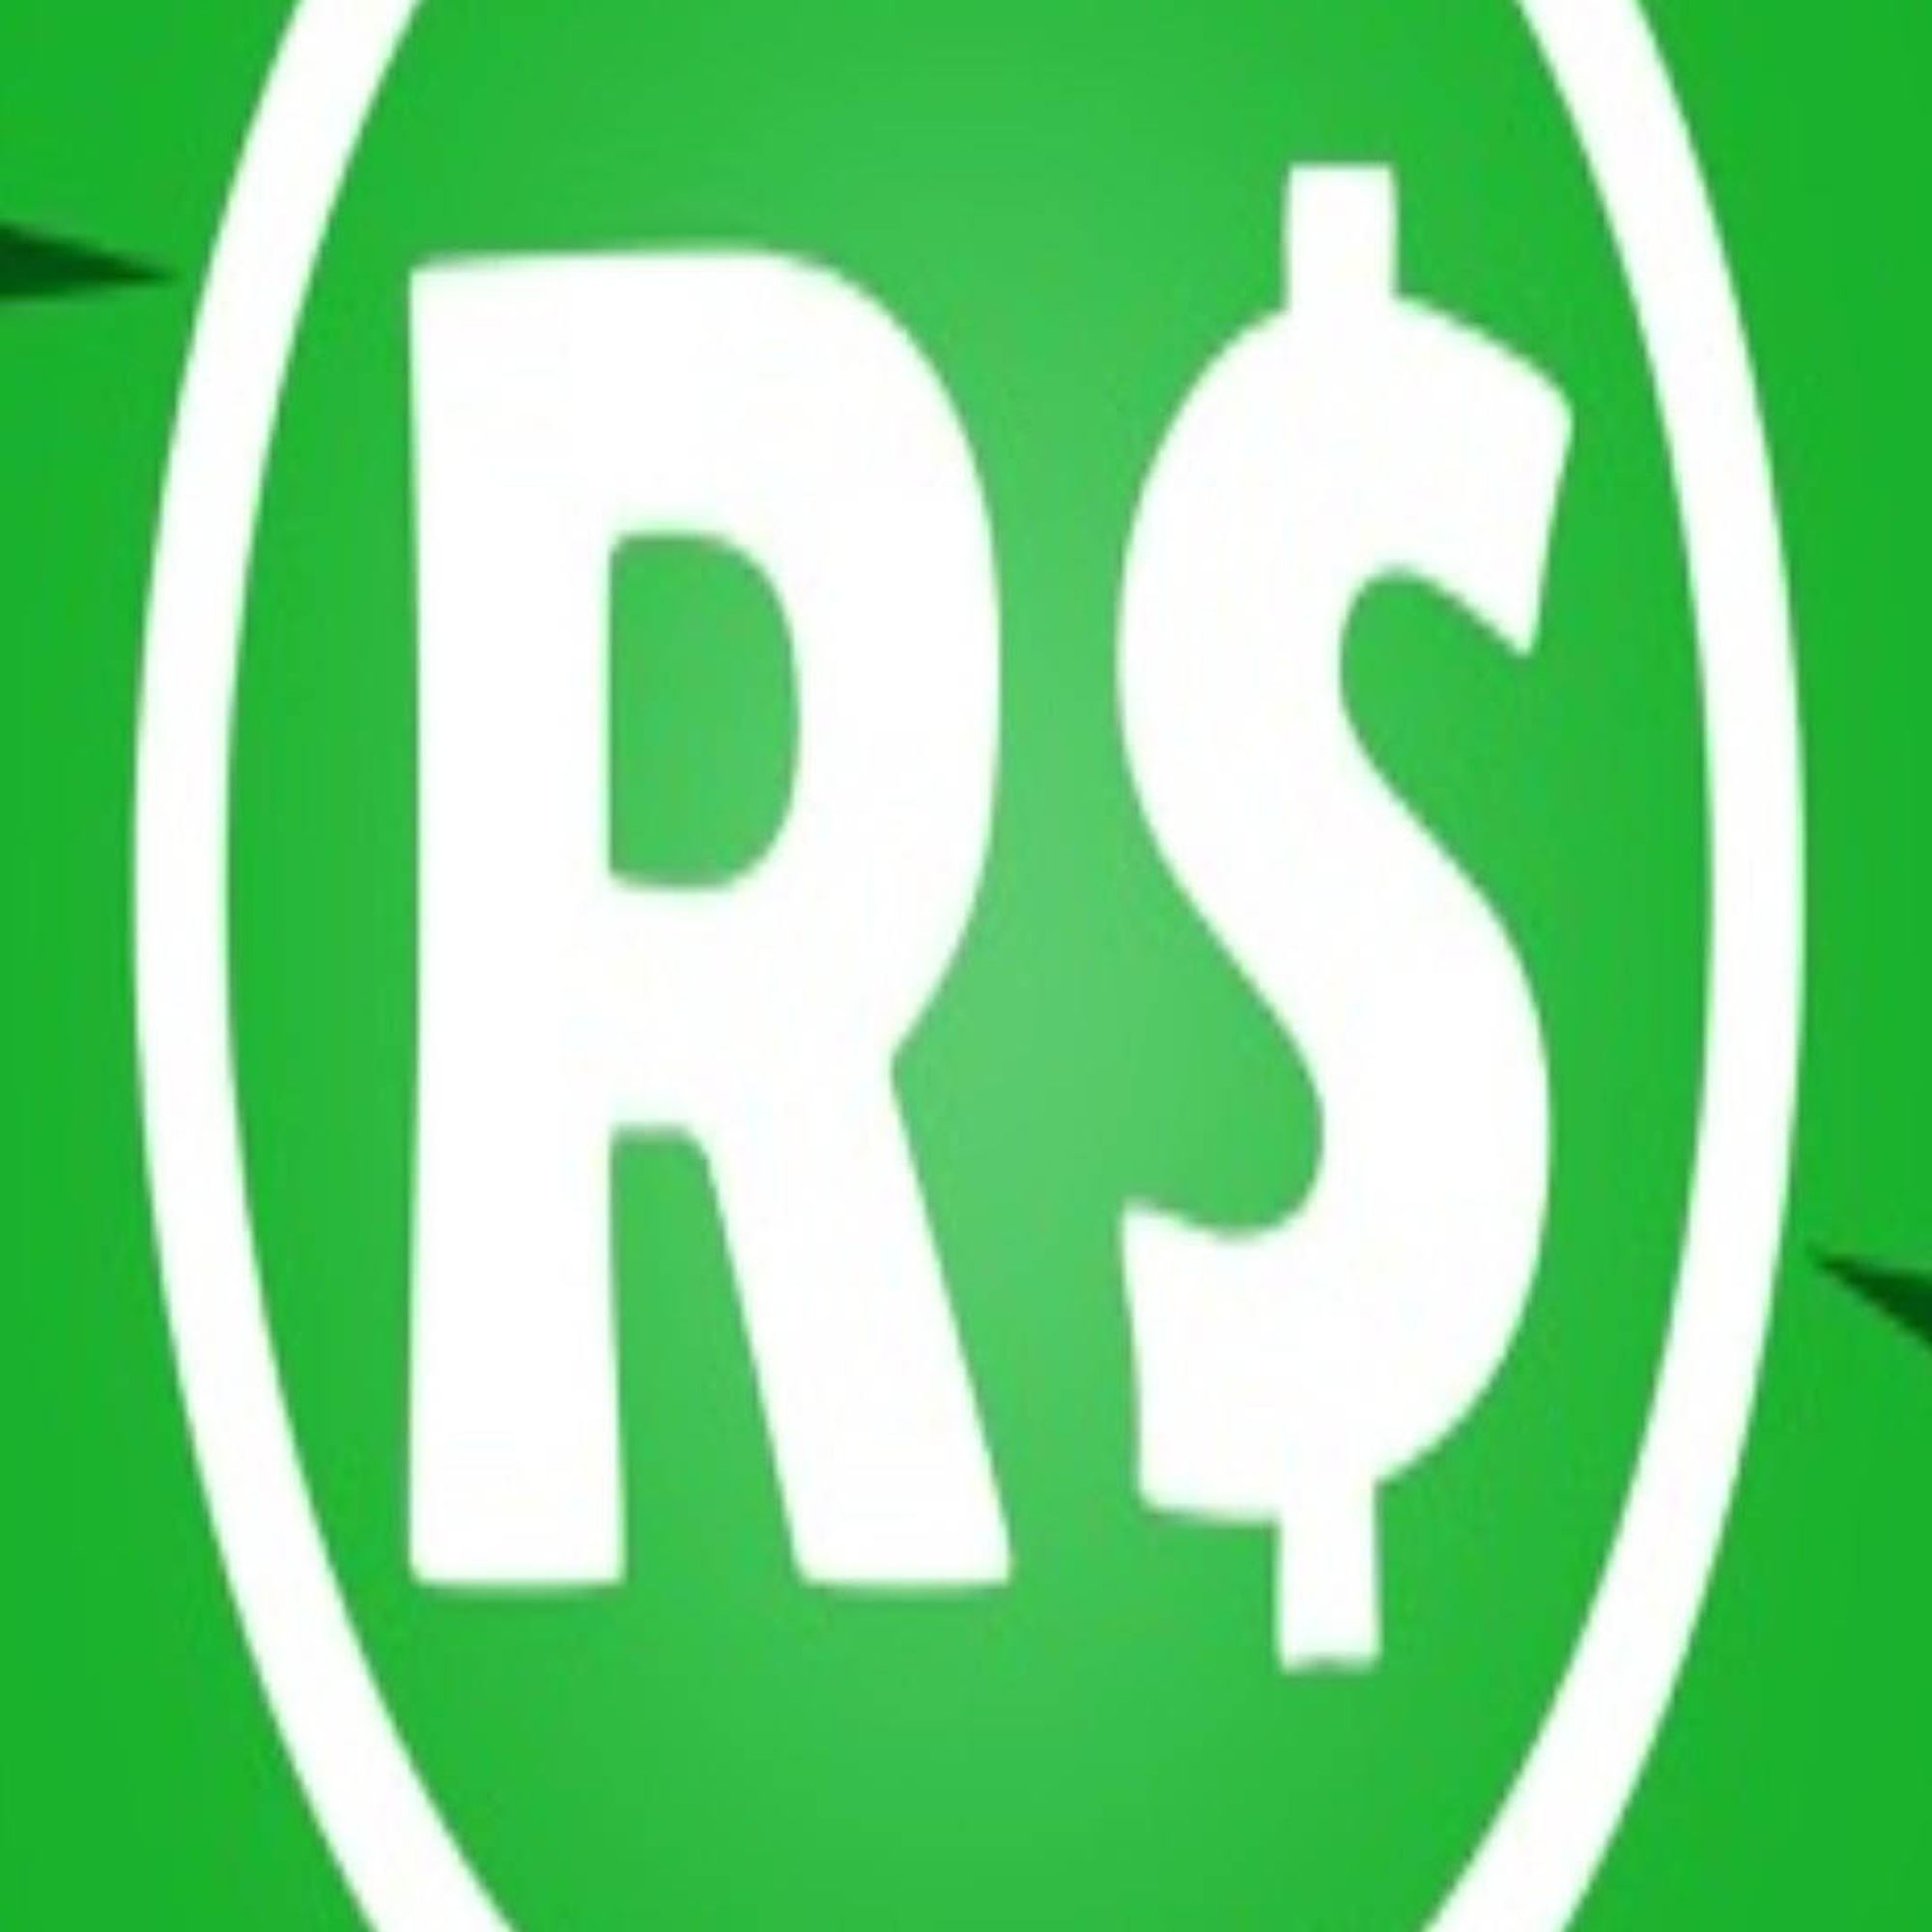 Free Robux Script Roblox Hack Club Roblox Bucks - free robux 2018 no human verification roblox hack